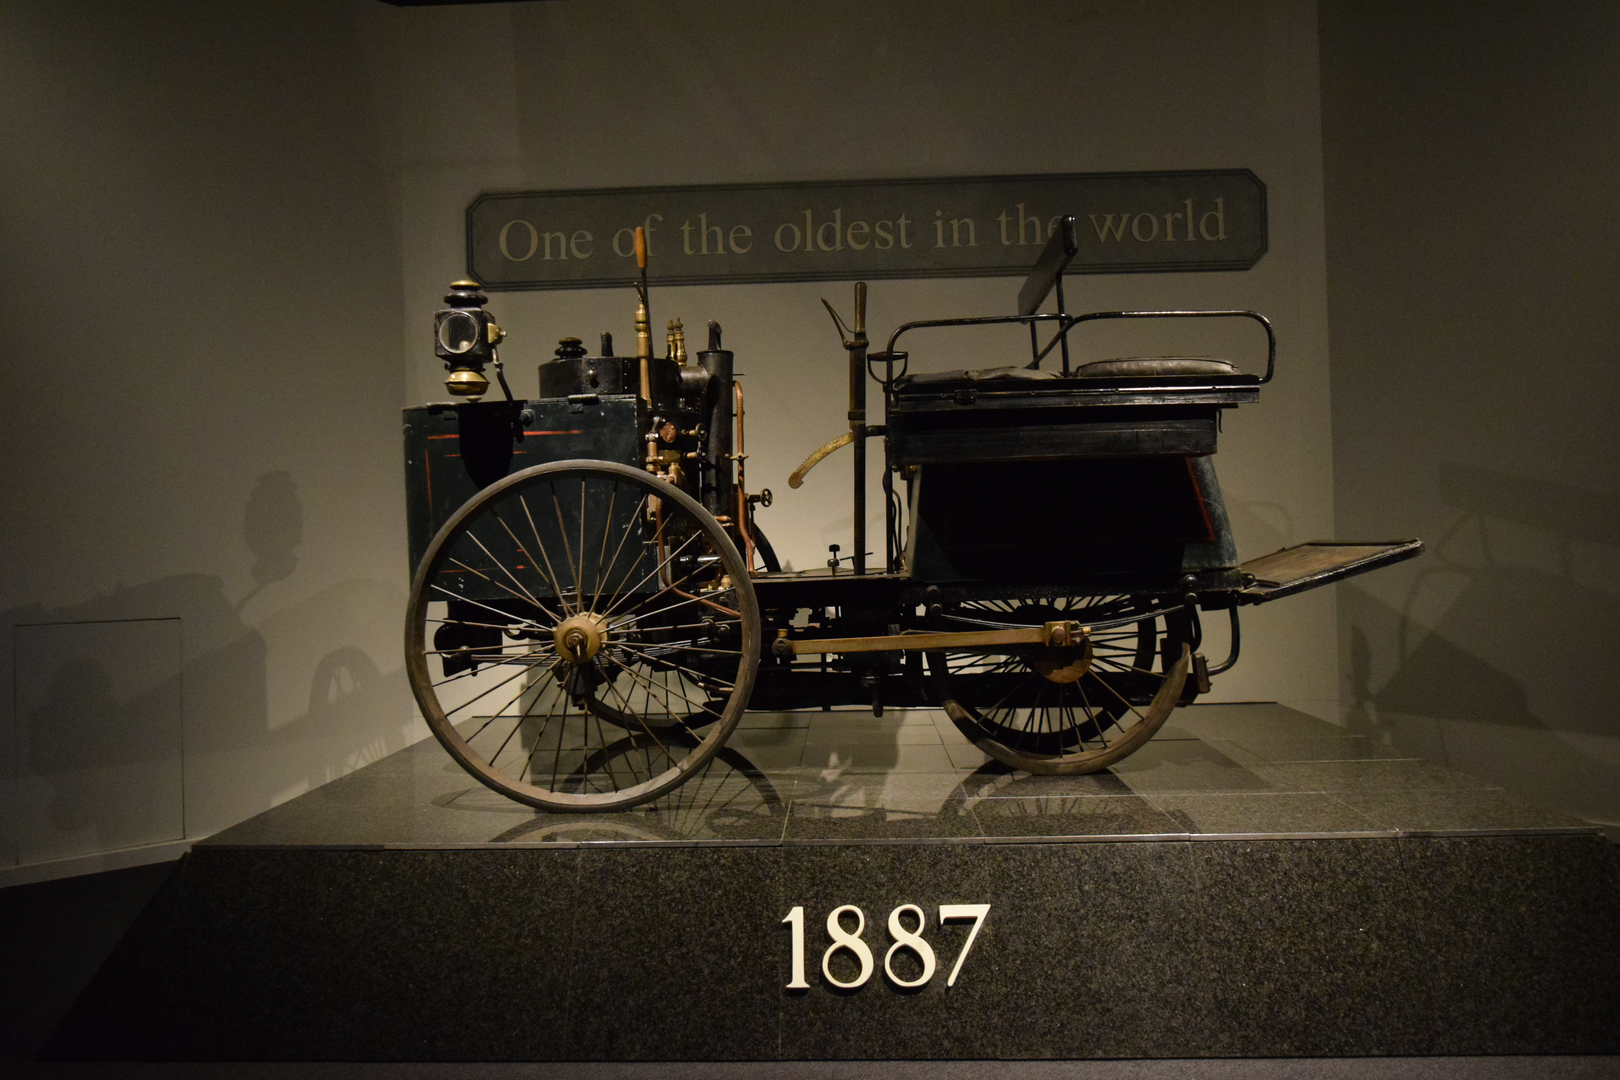 De Dion Bouton iz 1887. godine najstariji je automobil u Louwmanovu muzeju (Benz je replika), ali i jedan od najstarijih “preživjelih” automobila na svijetu